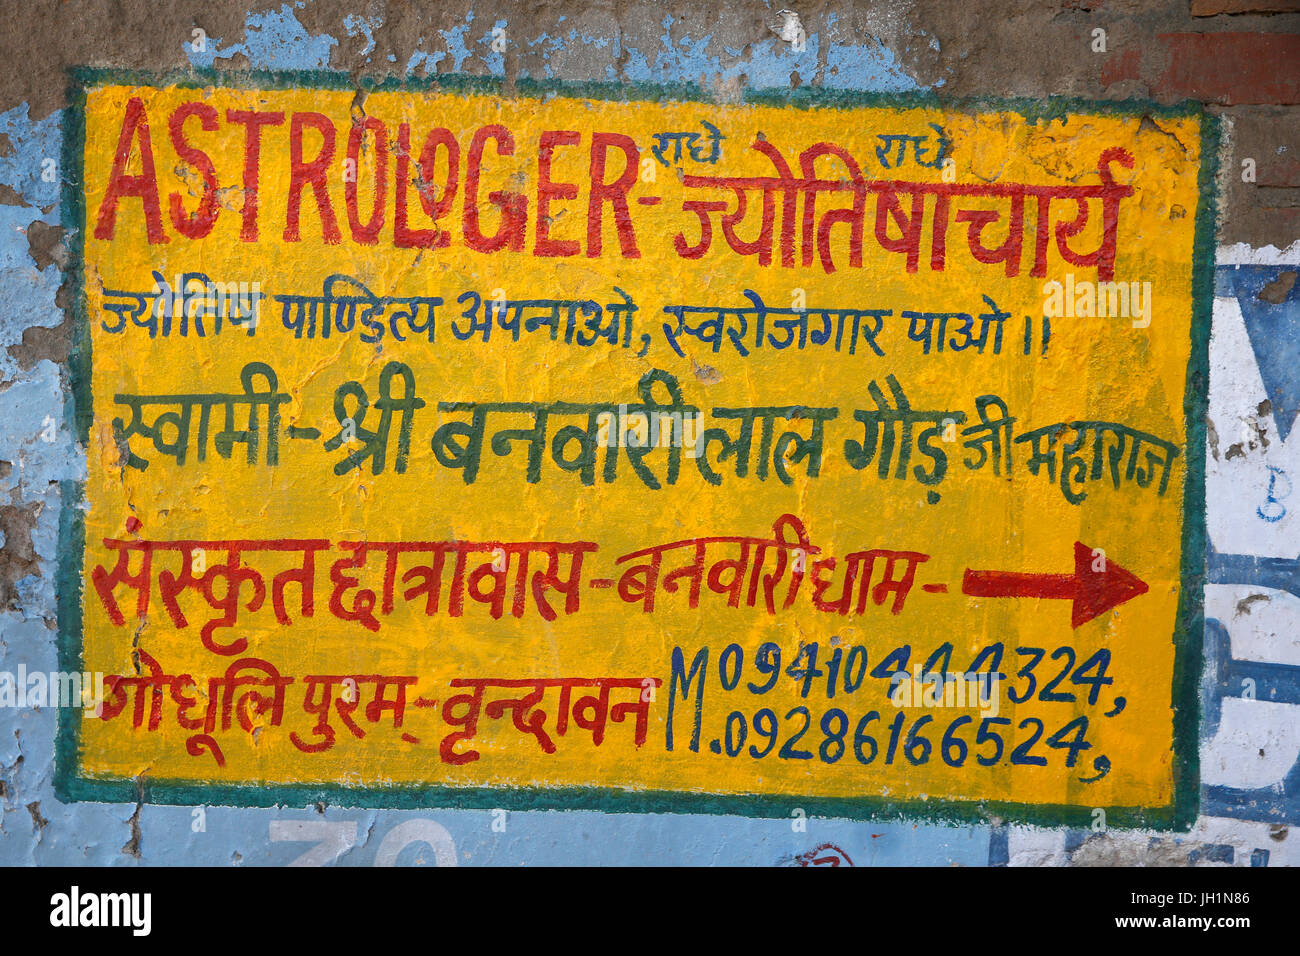 Astrologer's sign in Vrindavan, Uttar Pradesh. India. Stock Photo